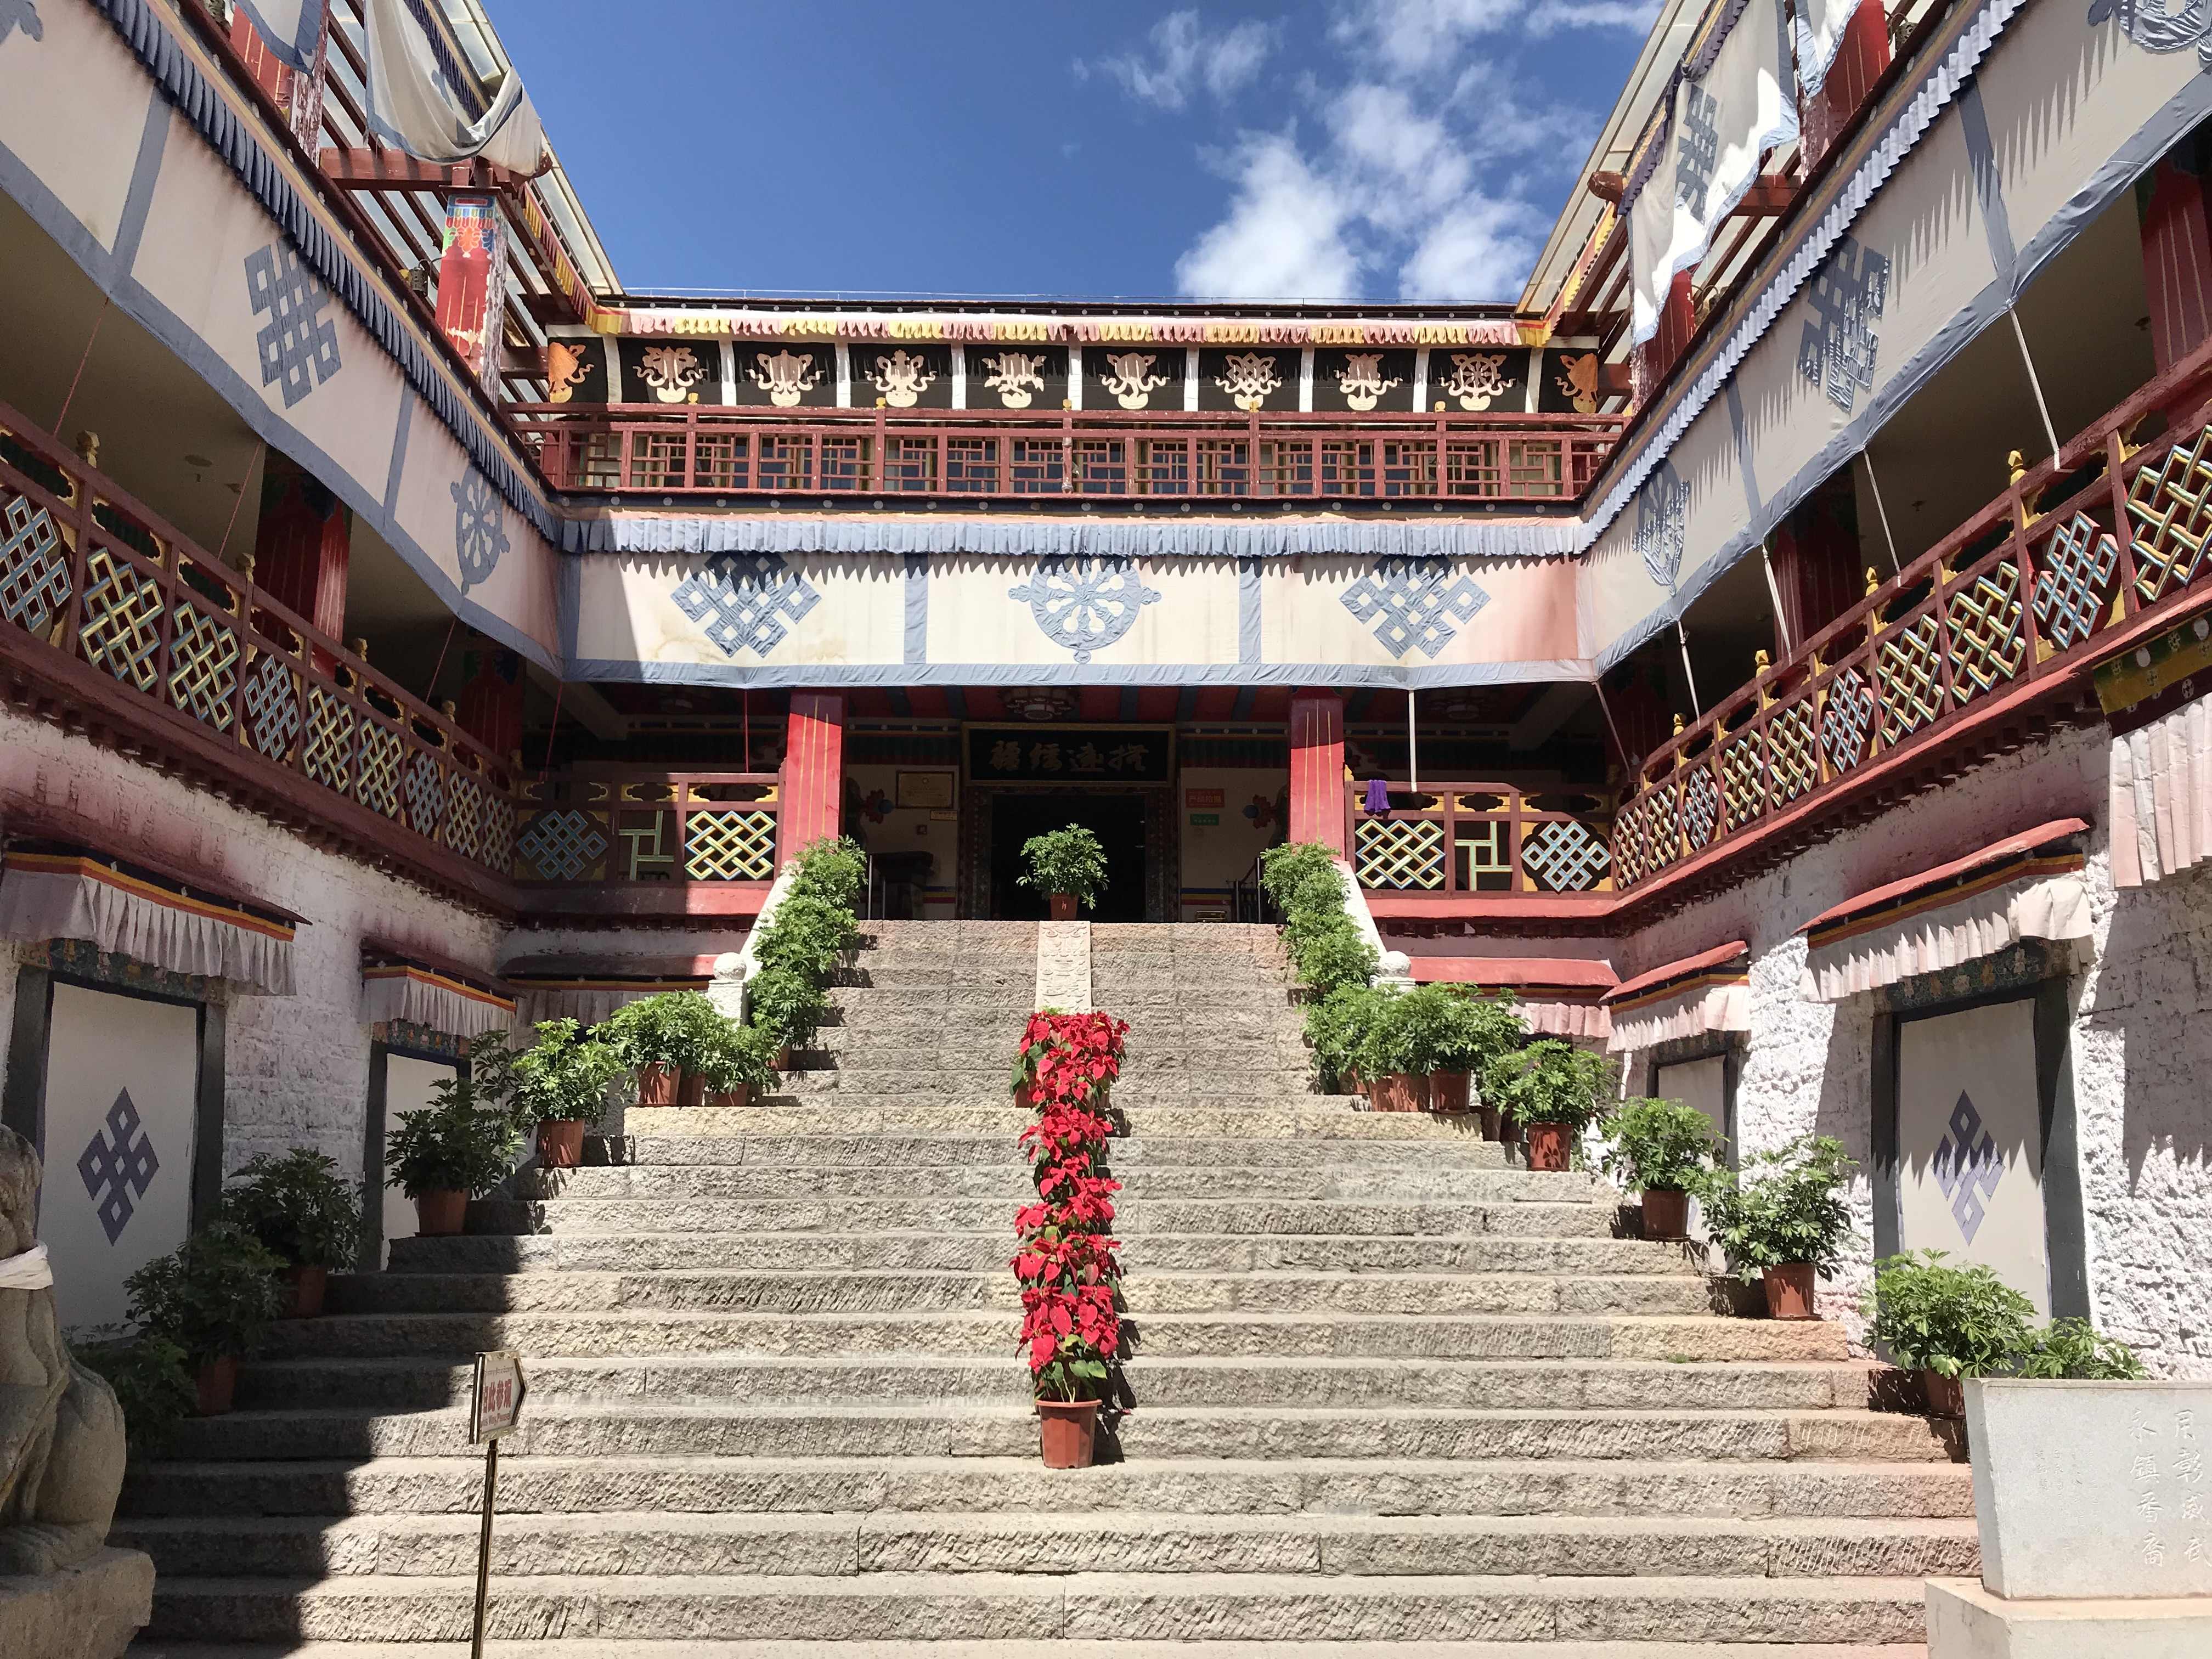 2021驻藏大臣衙门遗址游玩攻略,北侧,非常好找,无需门票